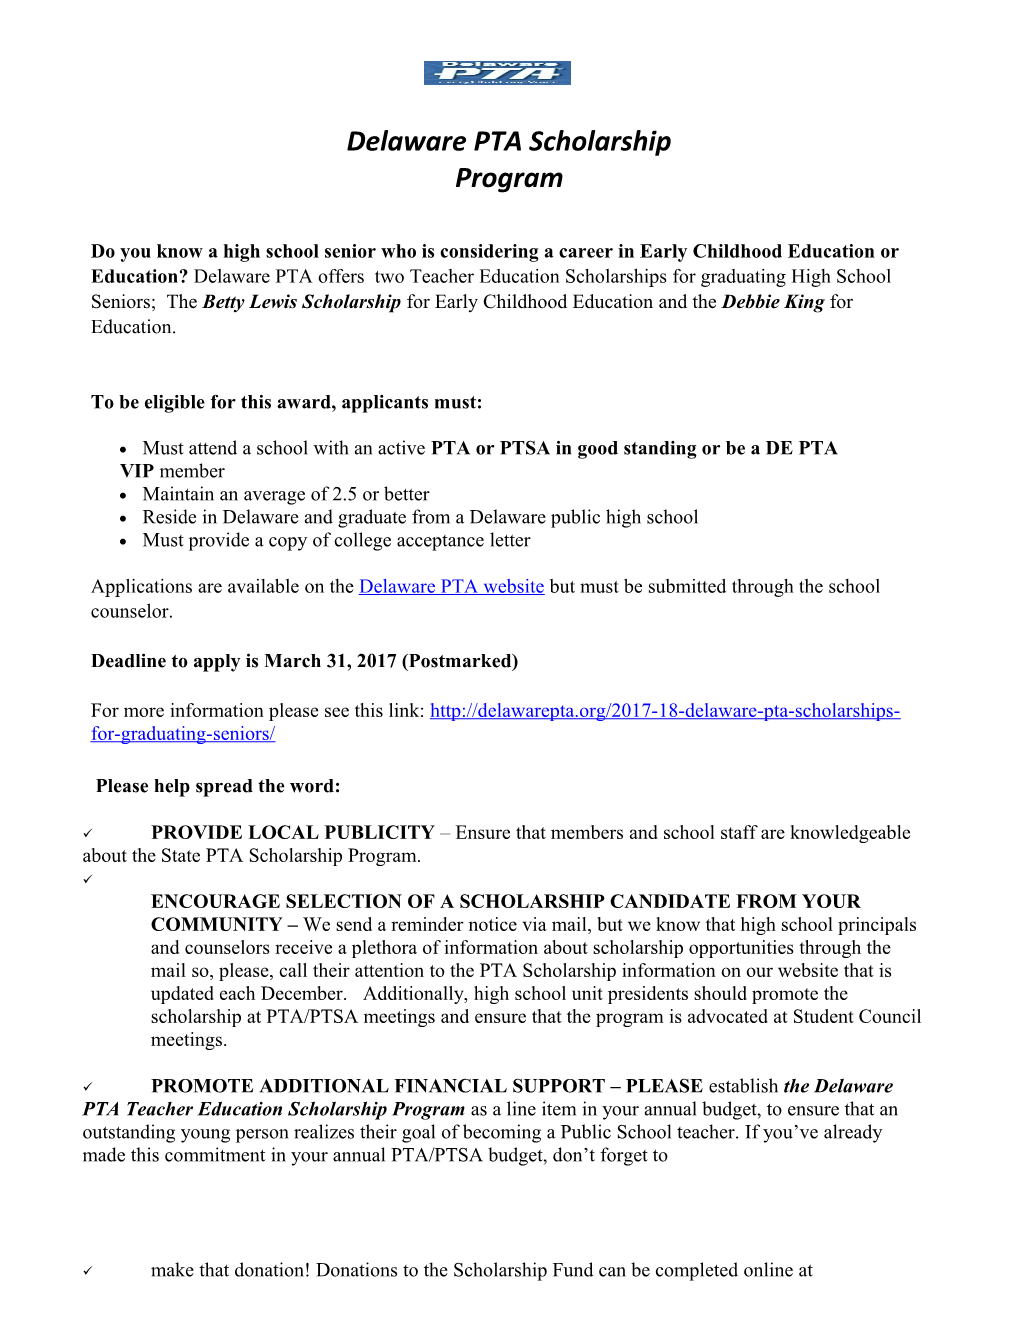 Delaware PTA Scholarship Program